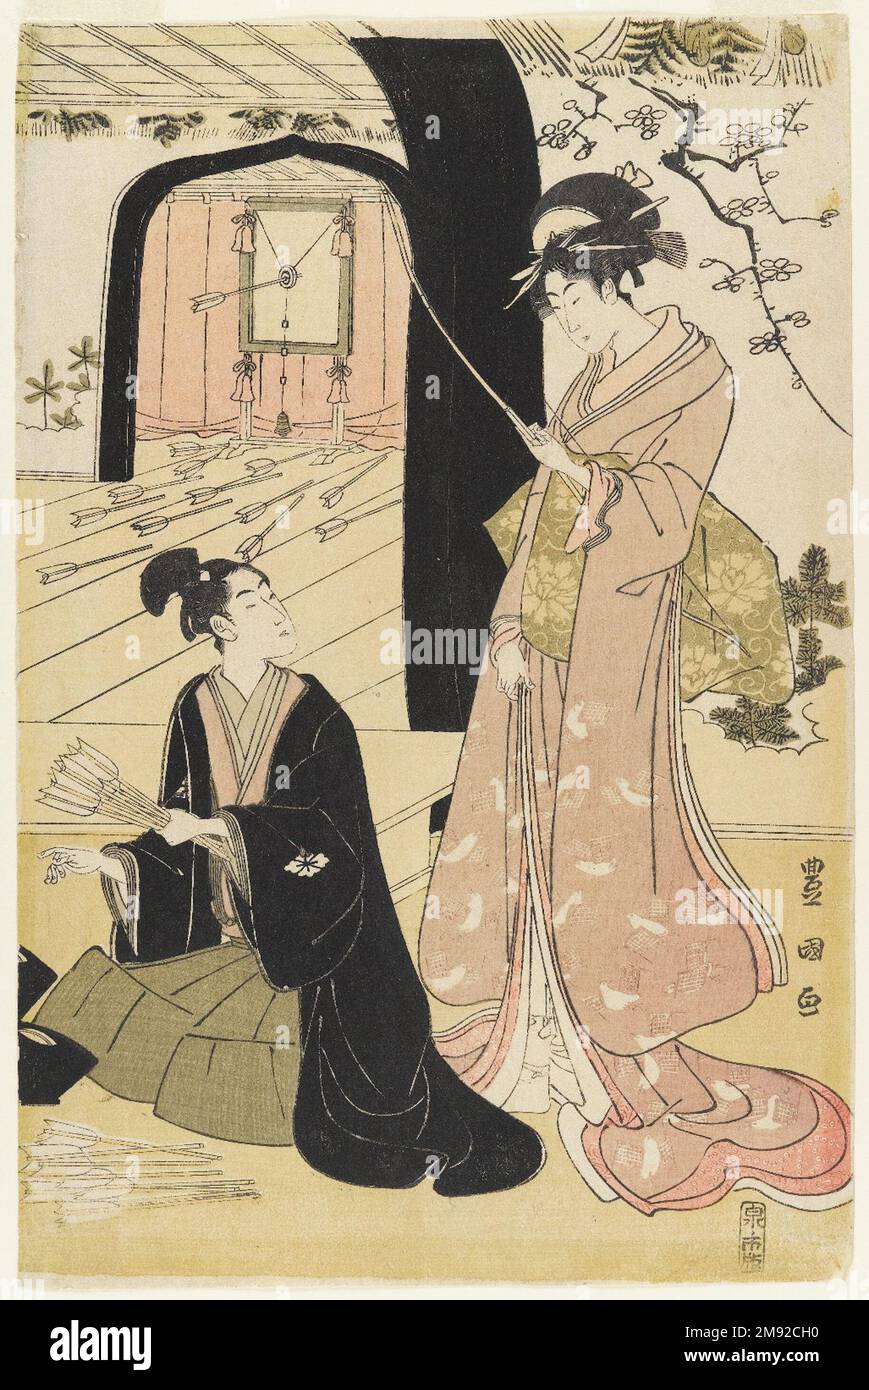 Giovani Samurai e presenze femminili che praticano la Tiro con l'Arco, metà di un Diptych Utagawa Toyokuni i (giapponese, 1769-1825). Giovani Samurai e prescieri femminili che praticano la Tiro con l'Arco, metà di un Dittico, ca. 1800. Diptych, stampa woodblock, 15 1/4 x 10 1/8" (38,7 x 25,7 cm). Oltre alle sue celebri stampe d'attore kabuki, Toyokuni eccelse a immagini di belle donne, incorporando il tipo di figura lunga e lithe che era entrato in voga con l'opera di Kitagawa Utamaro (1750-1806) e di Torii Kiyonaga (1752-1815) nei decenni precedenti. Il tiro con l'arco era un'attività raffinata associata al samurai warr Foto Stock